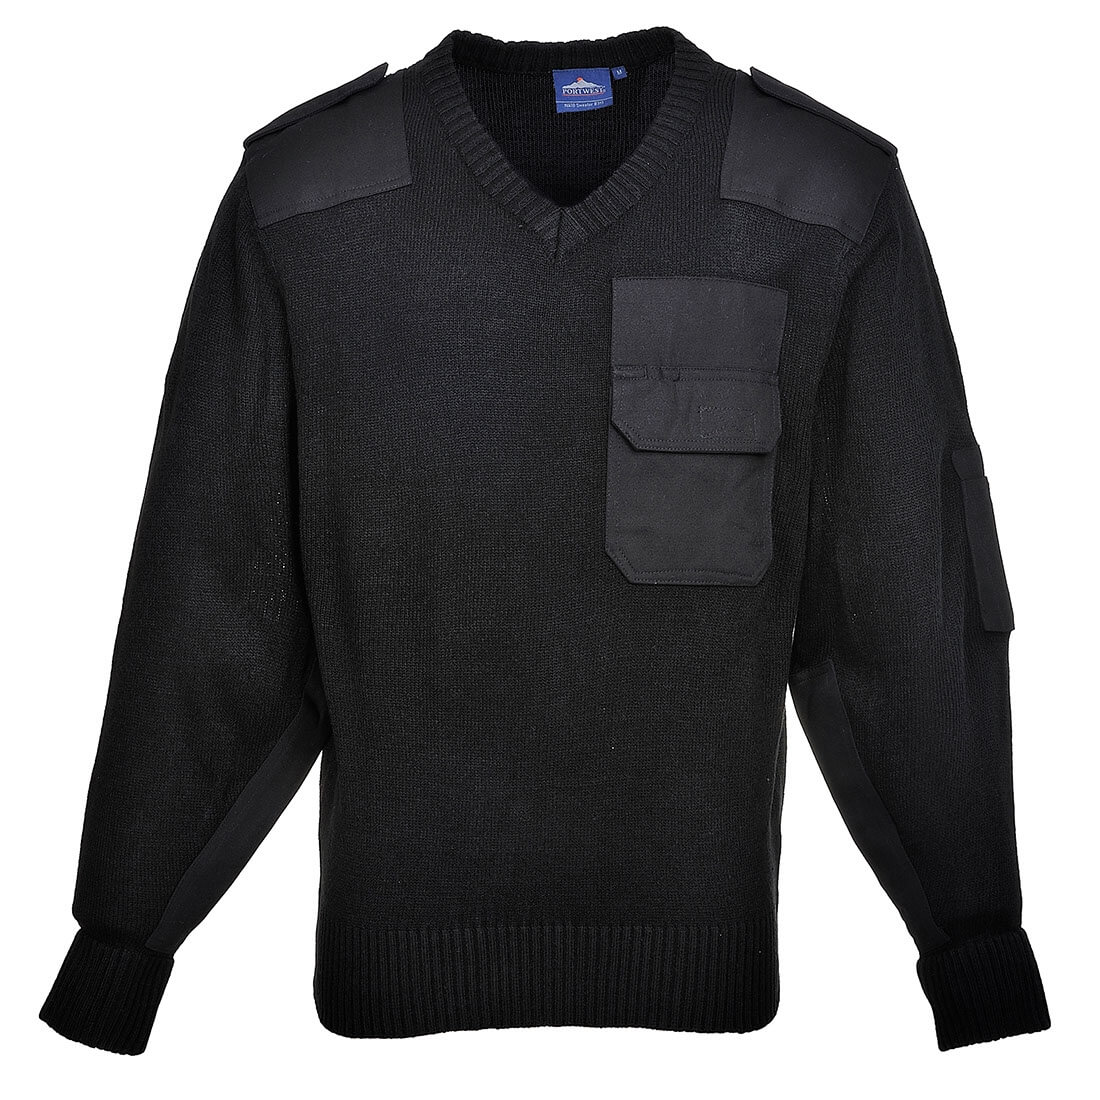 Nato Sweater - Safetywear